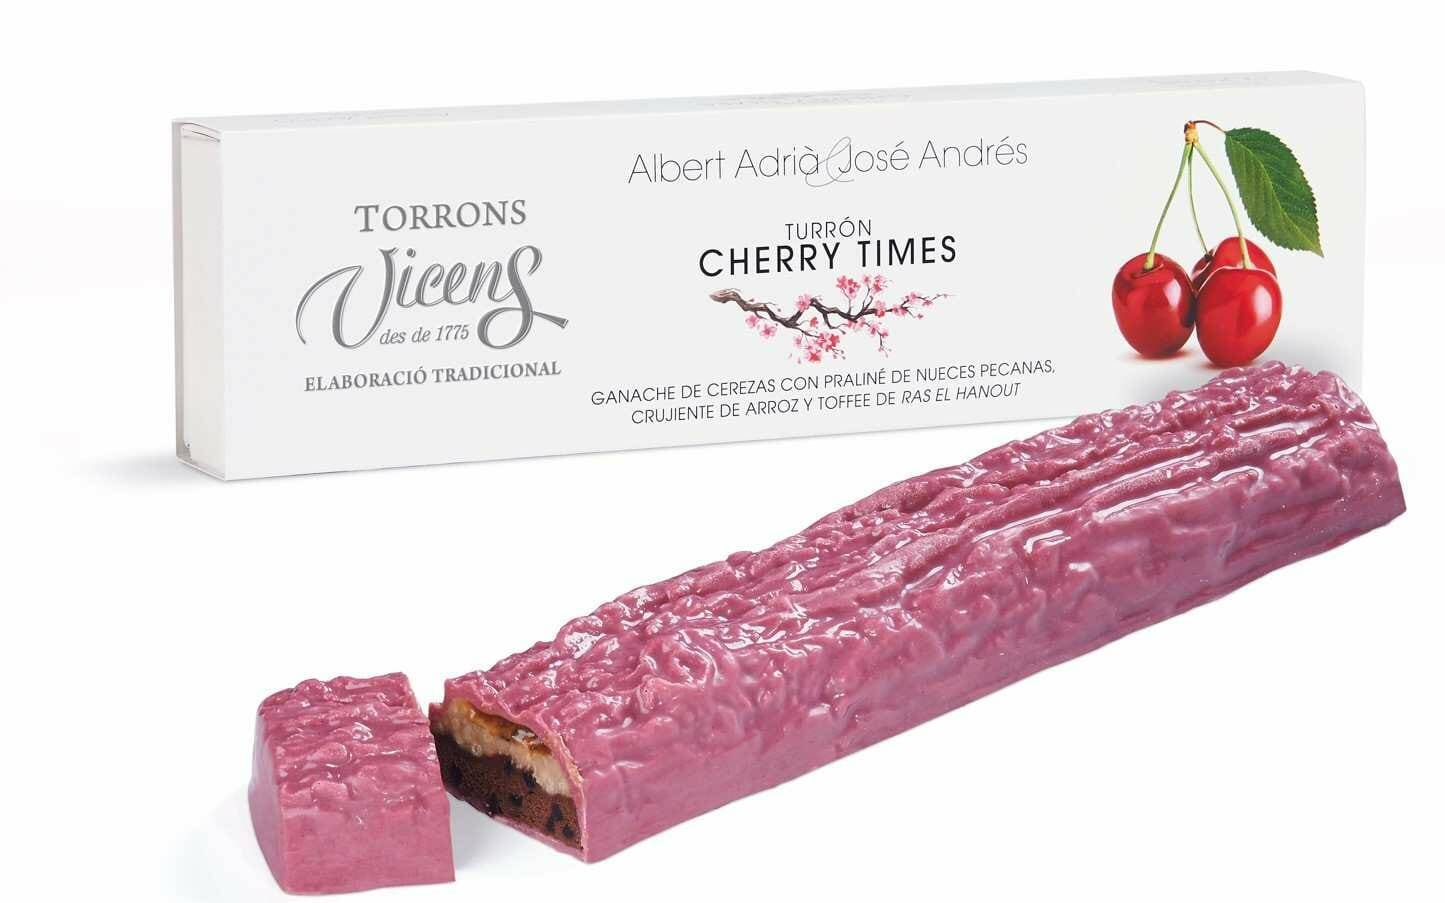 Cherry Times, el turrón de Torrons Vicens creado por Ferran Adriá y José Andrés